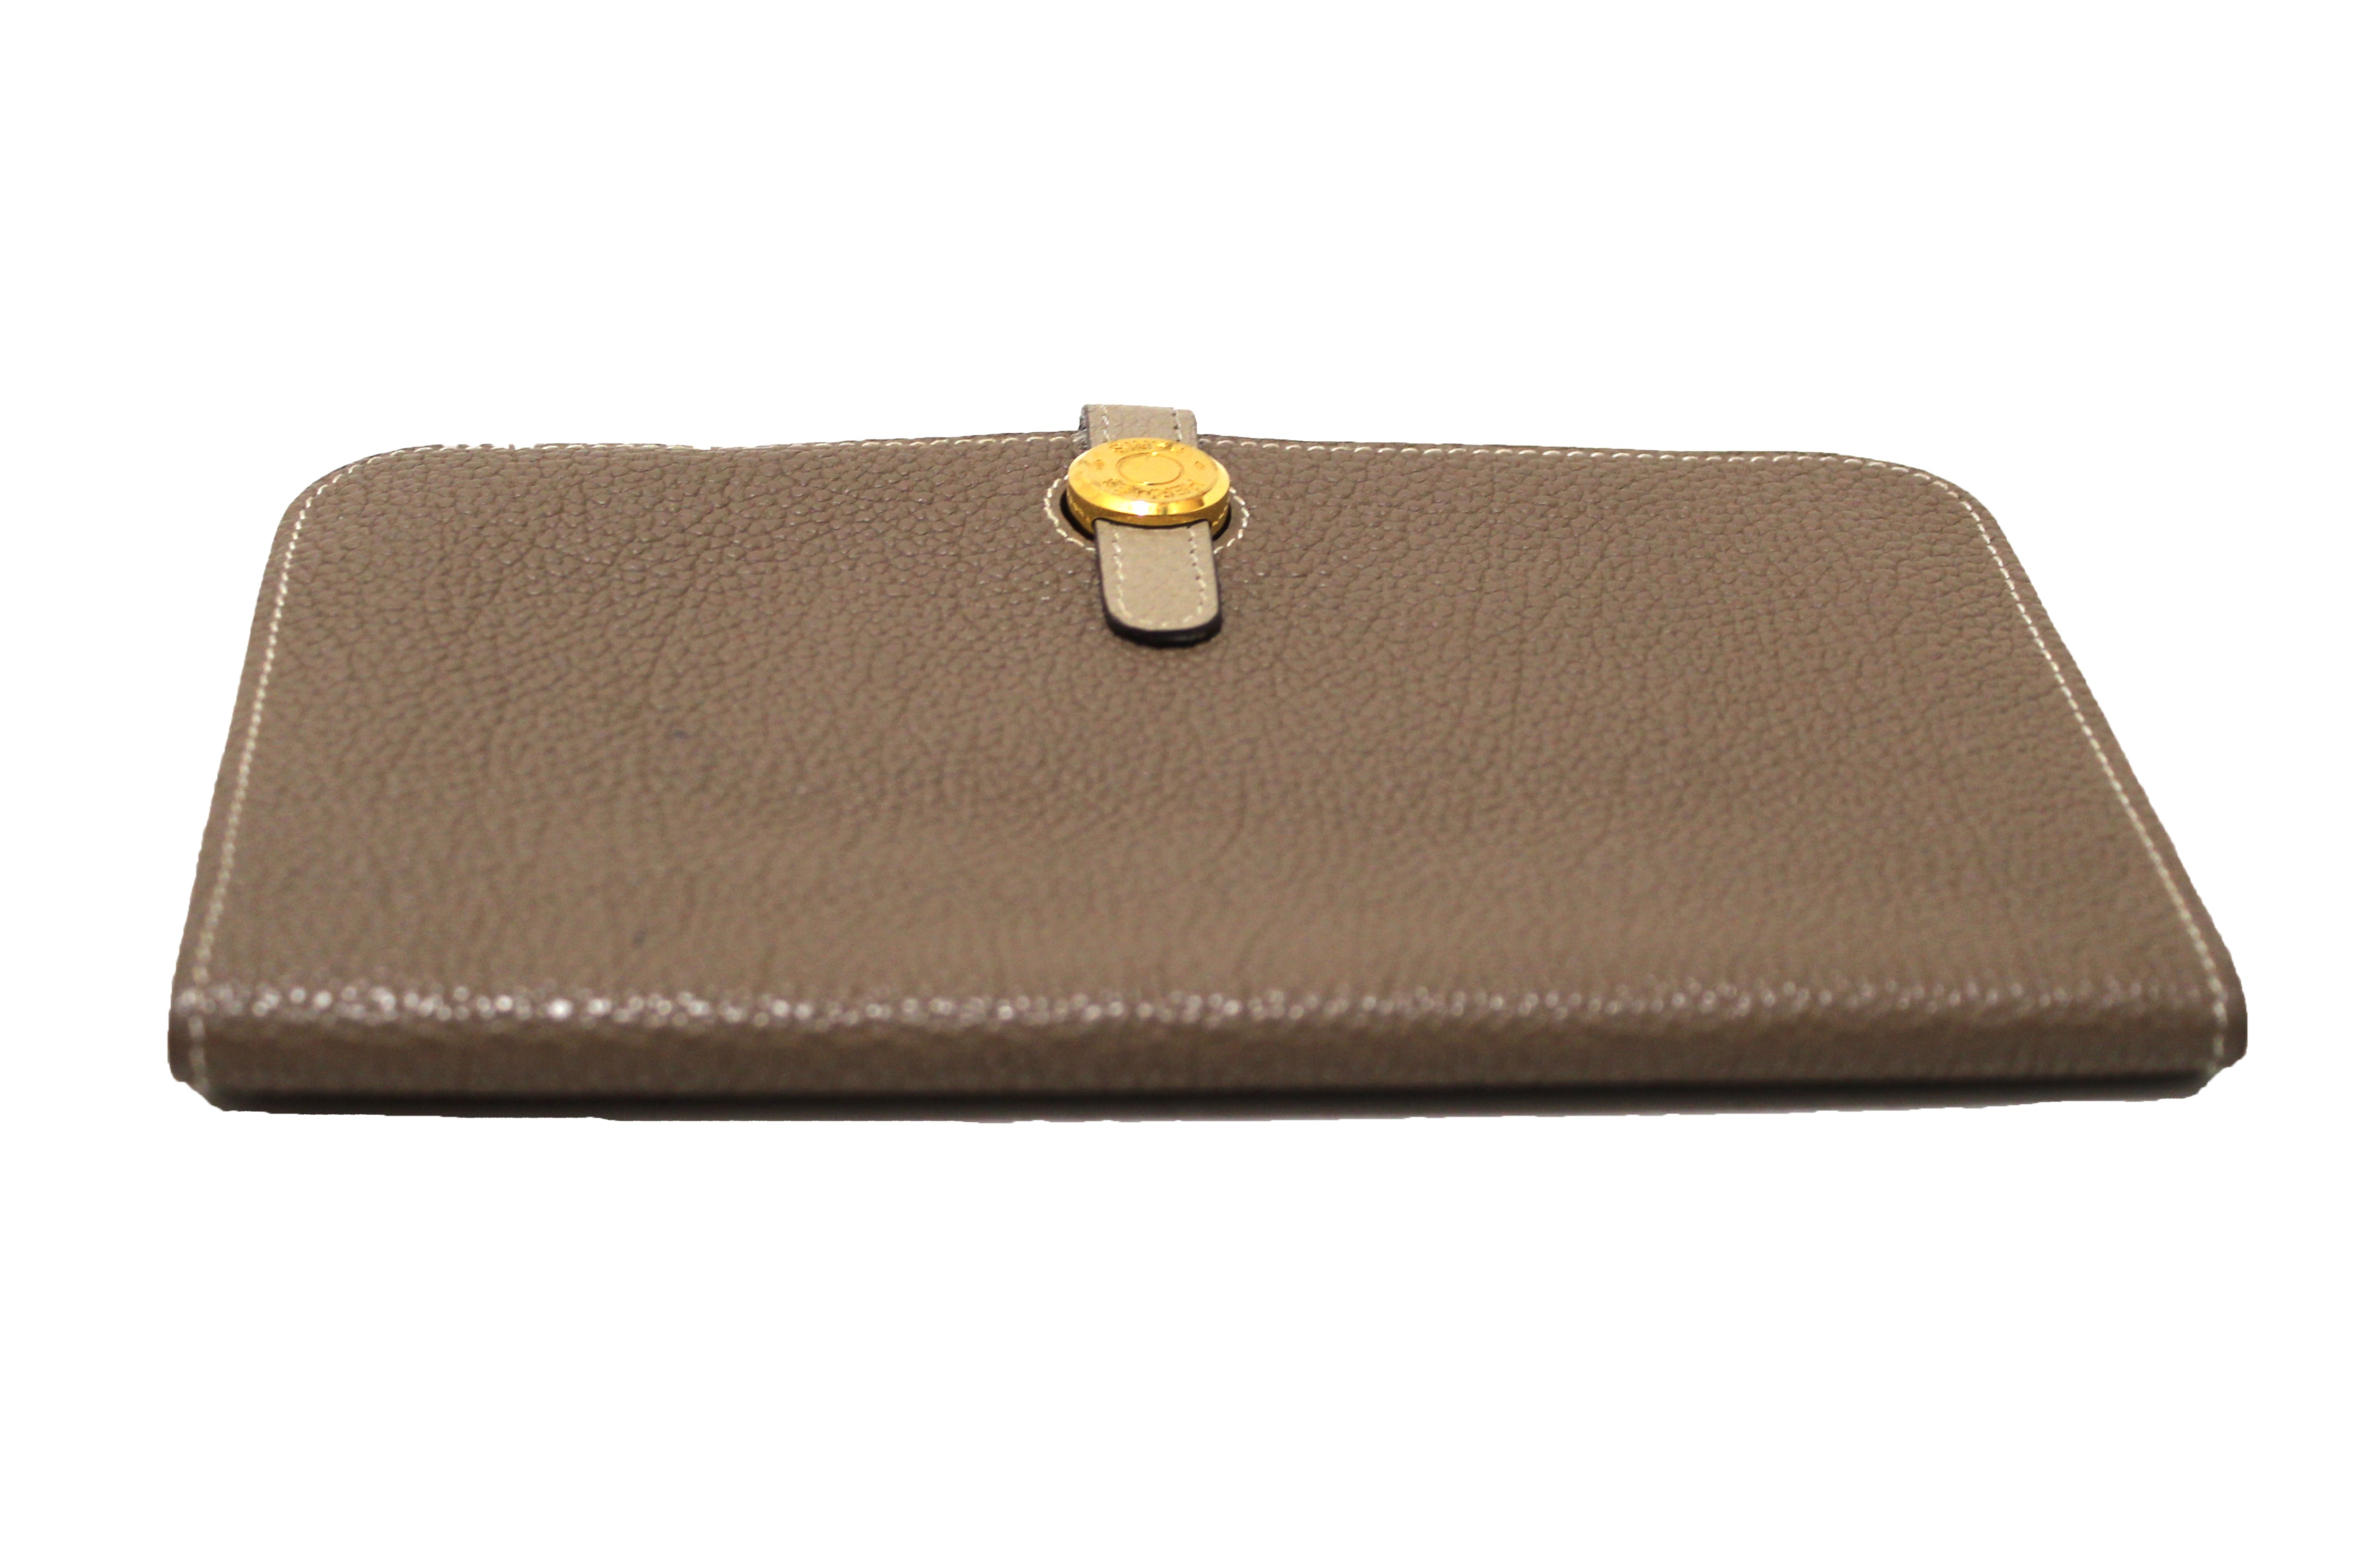 Hermes Bi-Color Togo Leather Dogon Wallet